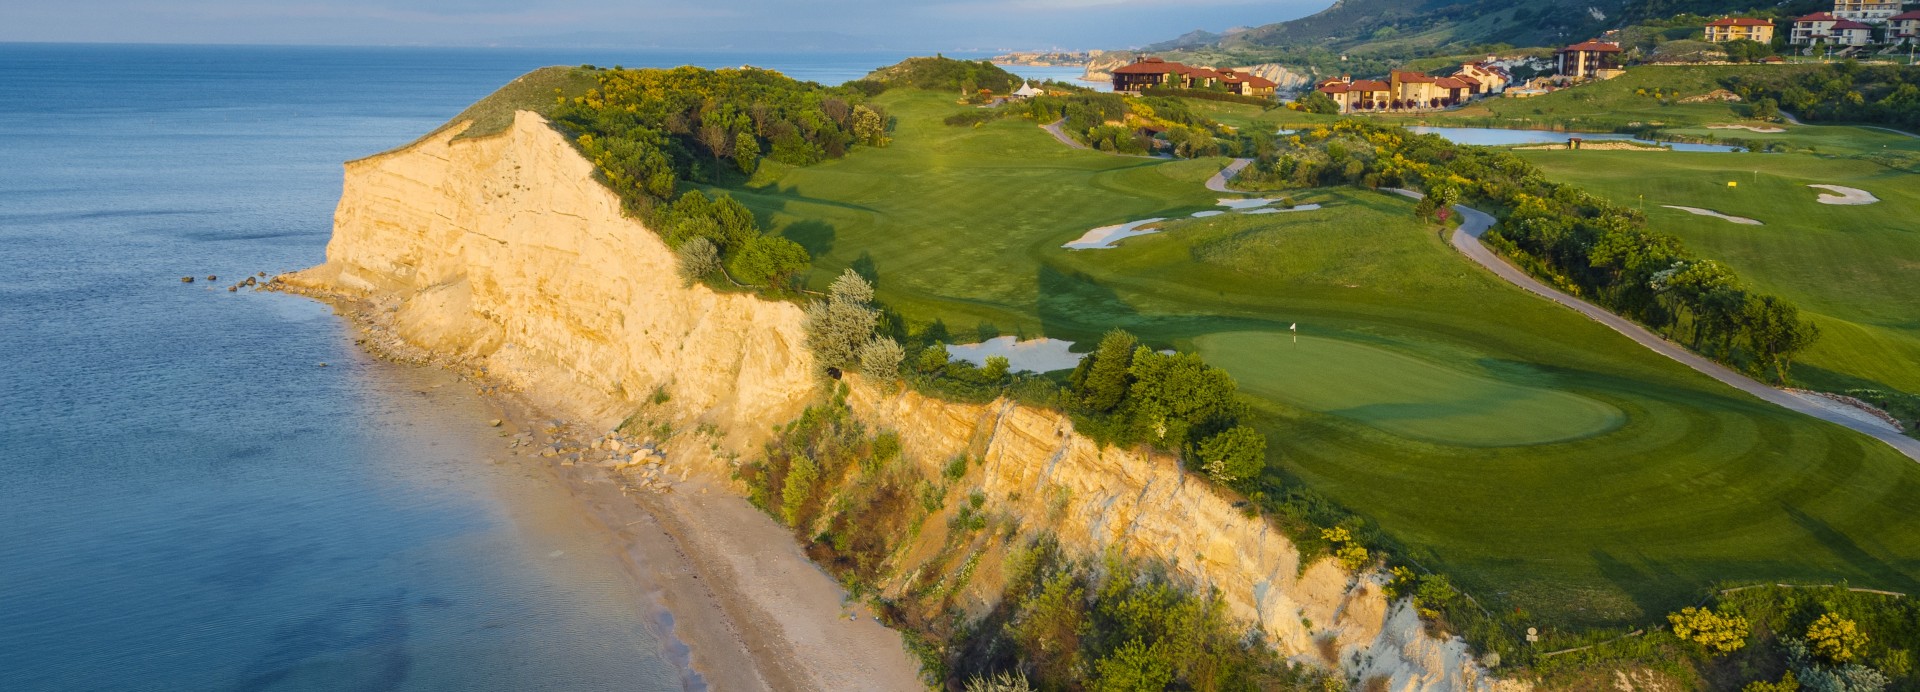 thracian cliffs golf & spa resort - golf & let ****